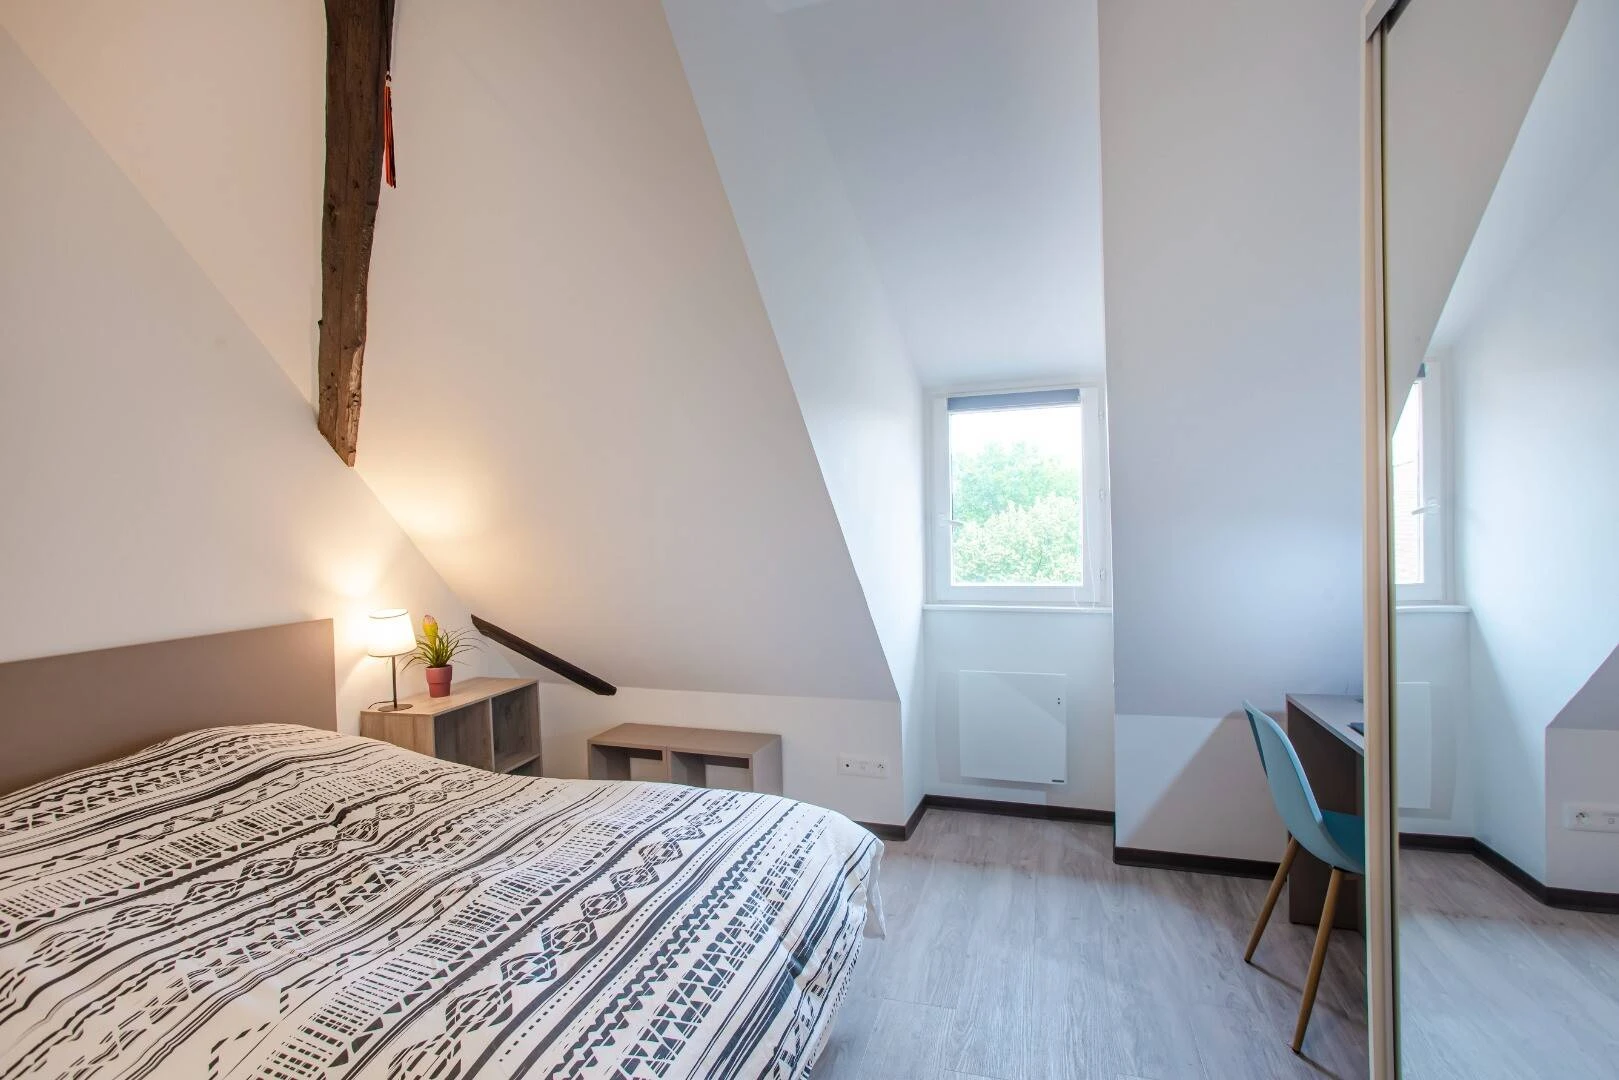 Alquiler de habitación en piso compartido en Colmar